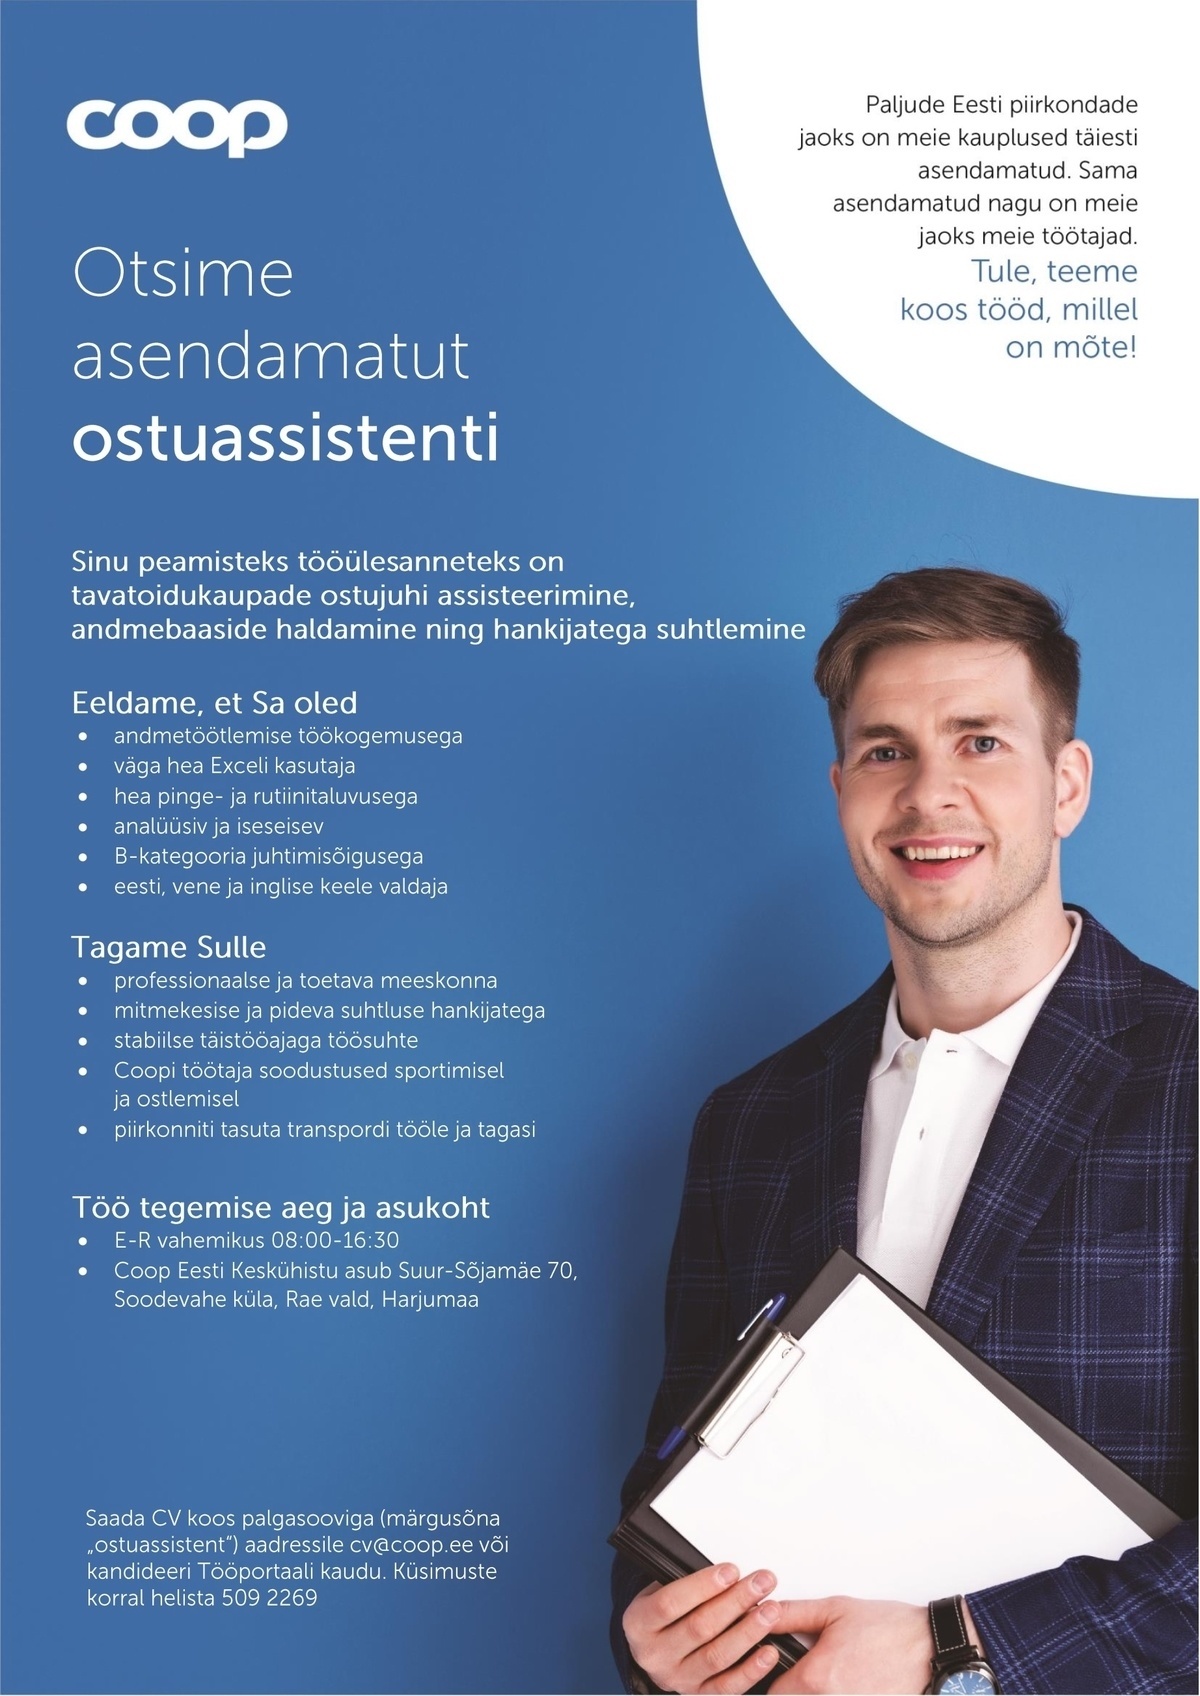 Coop Eesti Keskühistu Ostuassistent